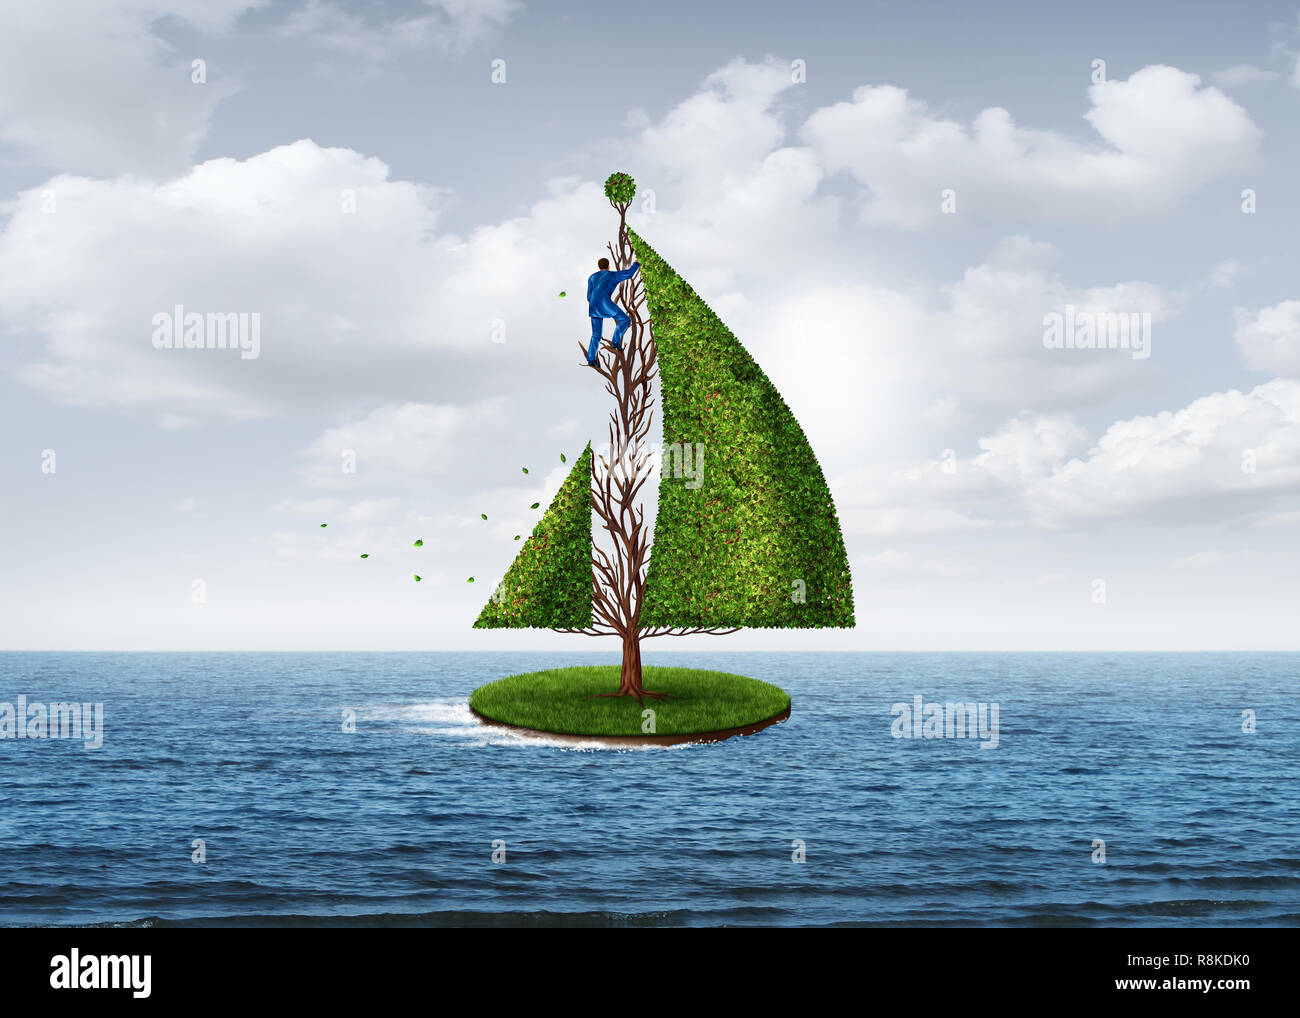 Business Development Metapher und strategischen Vorwärts kreatives Denken als Person Gestaltung einen Baum in der Form eines bewegten Segelboot. Stockfoto